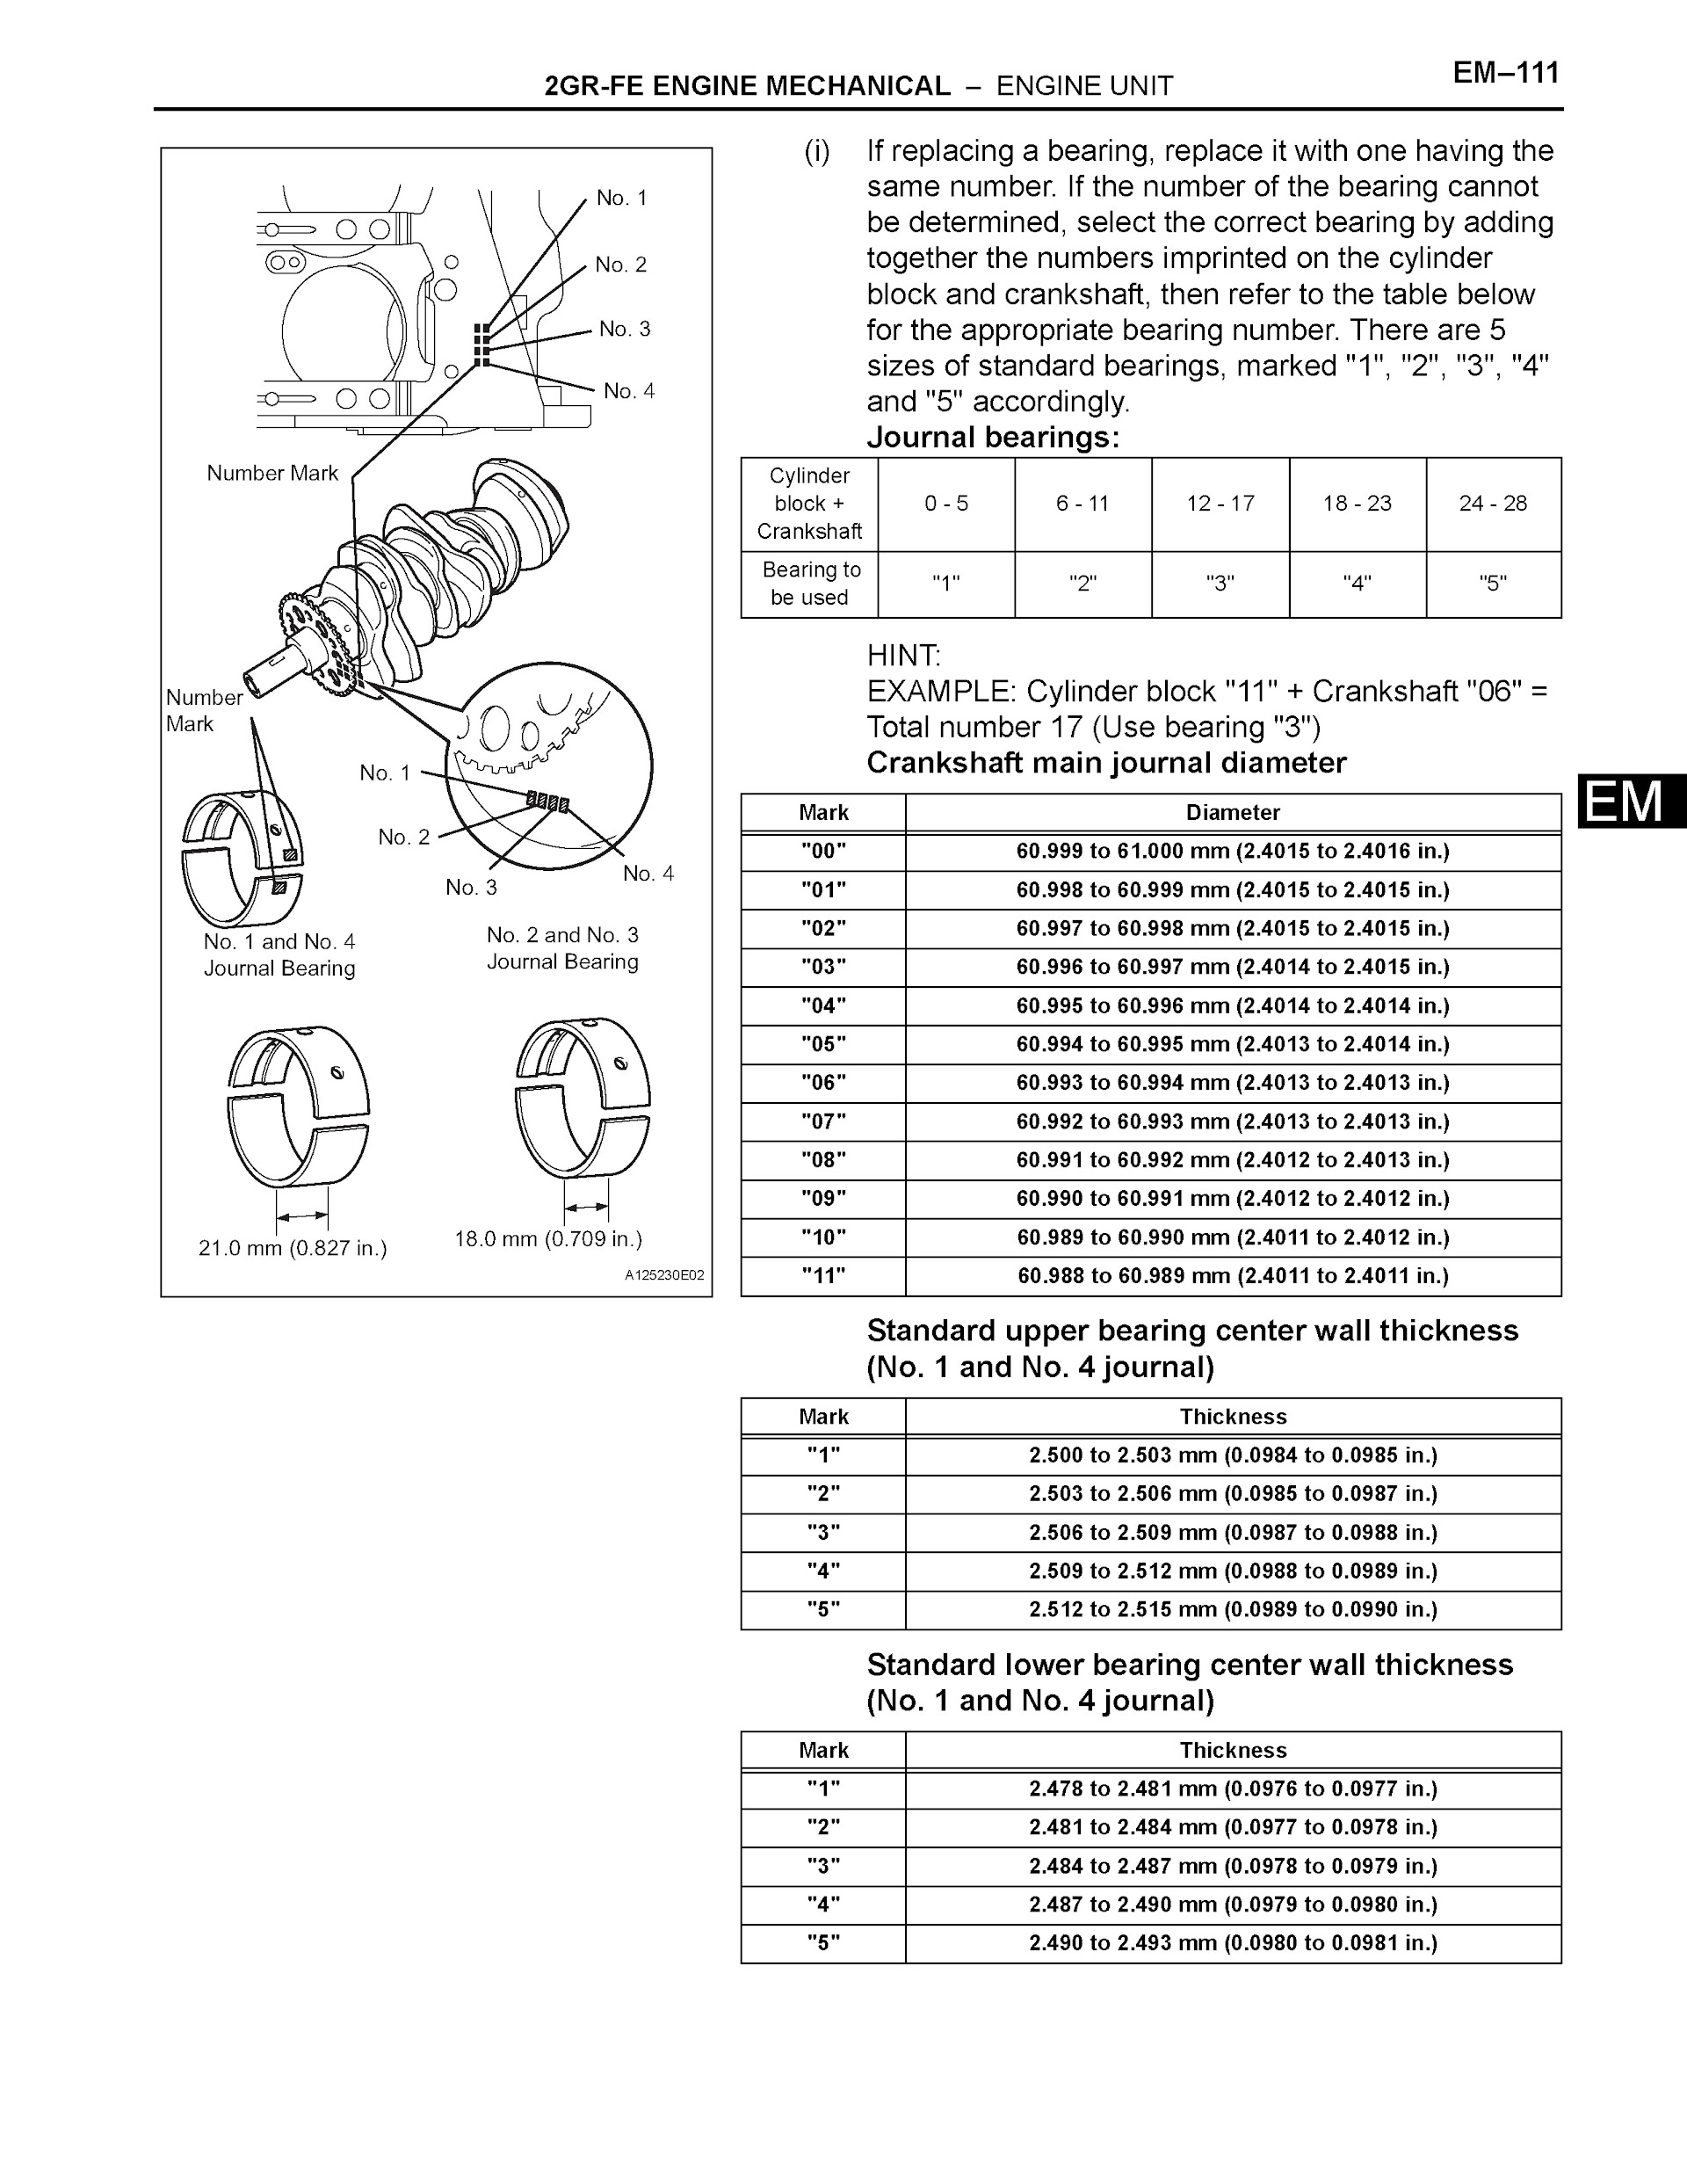 Download 2007-2011 Toyota Camry Repair Manual